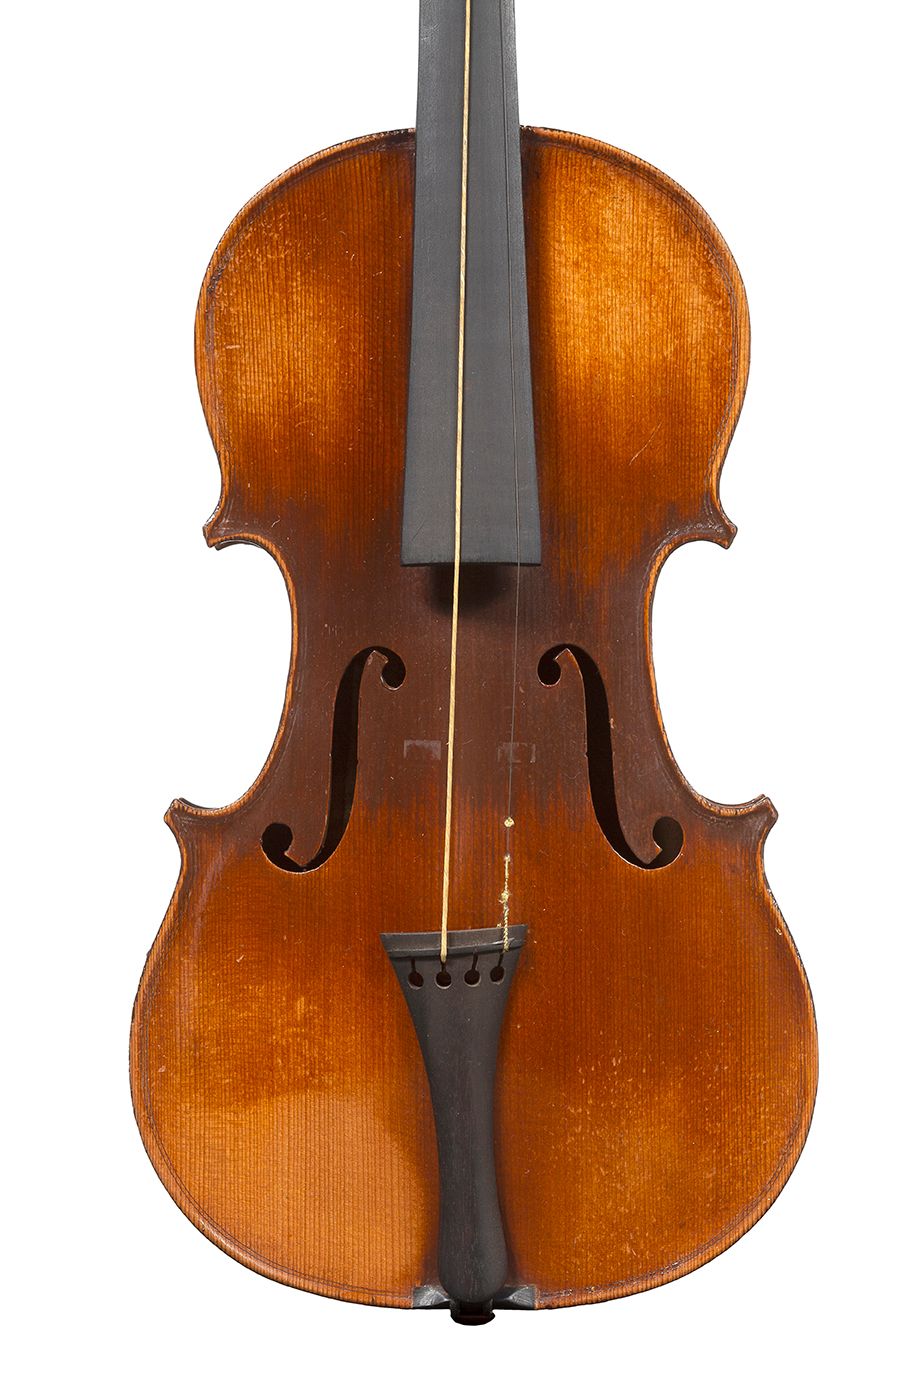 Null Violino 3/4 per studenti
Prodotto industrialmente
Non svitato, con etichett&hellip;